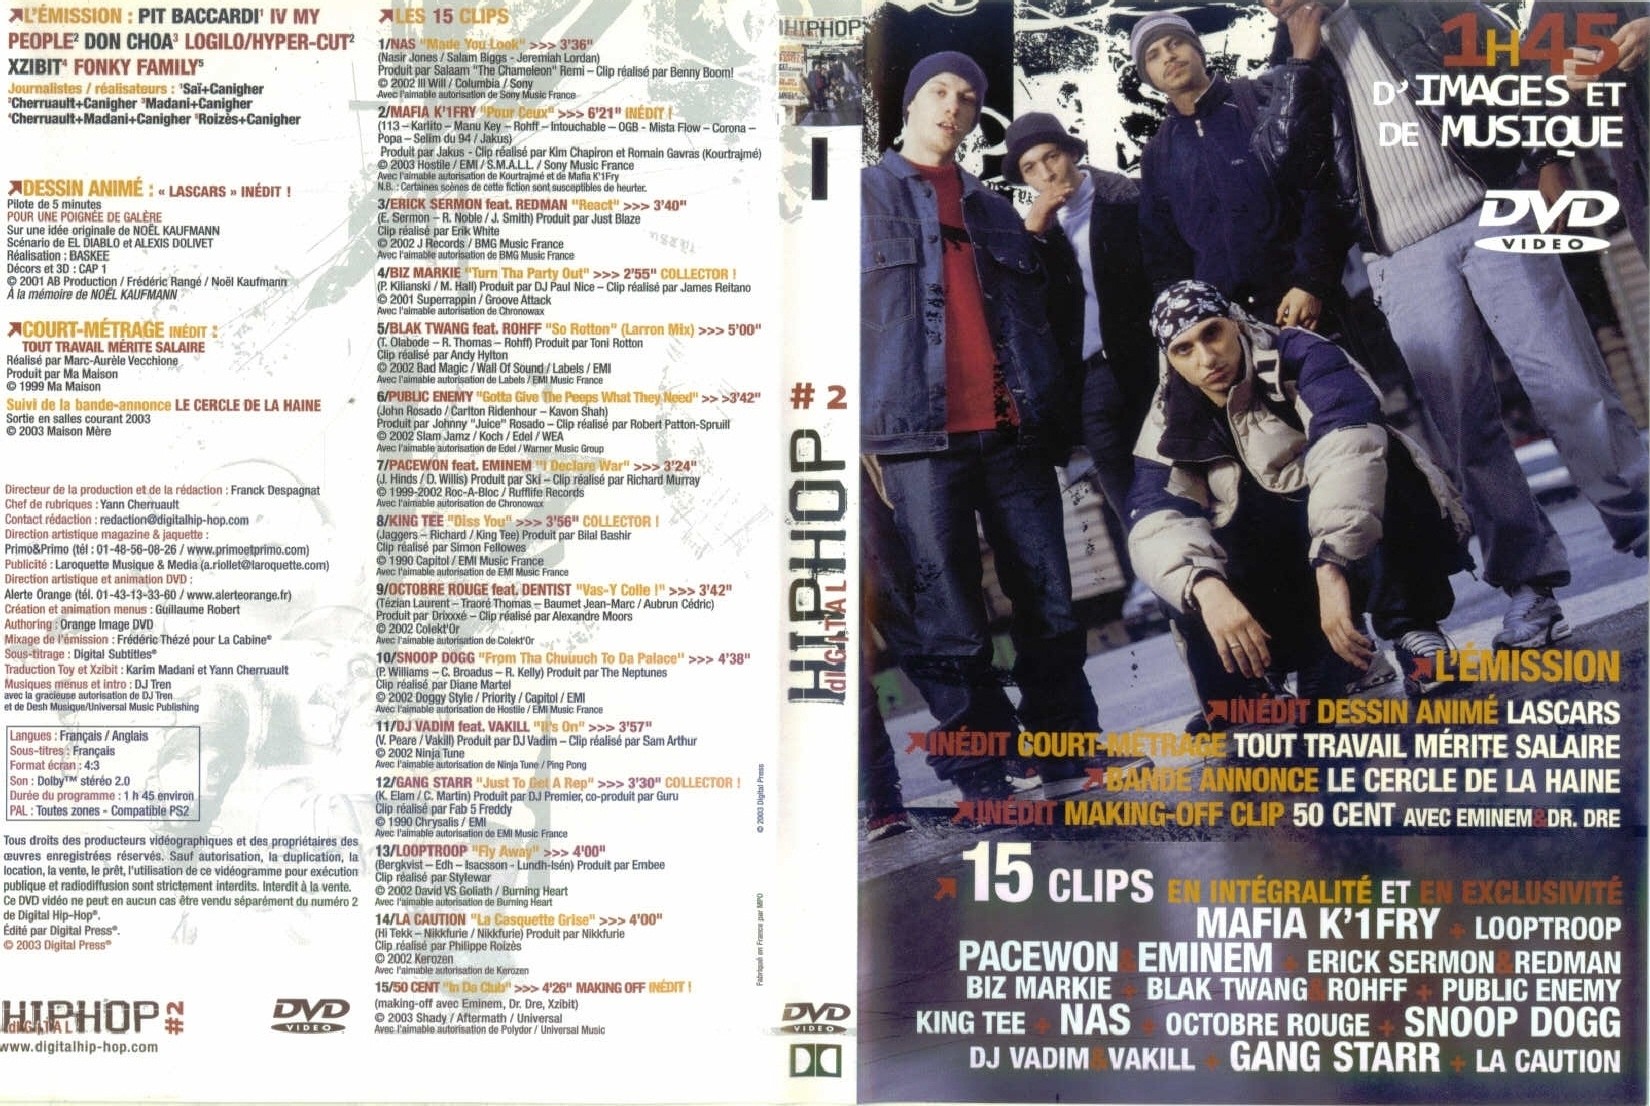 Jaquette DVD Digital hip hop vol 2